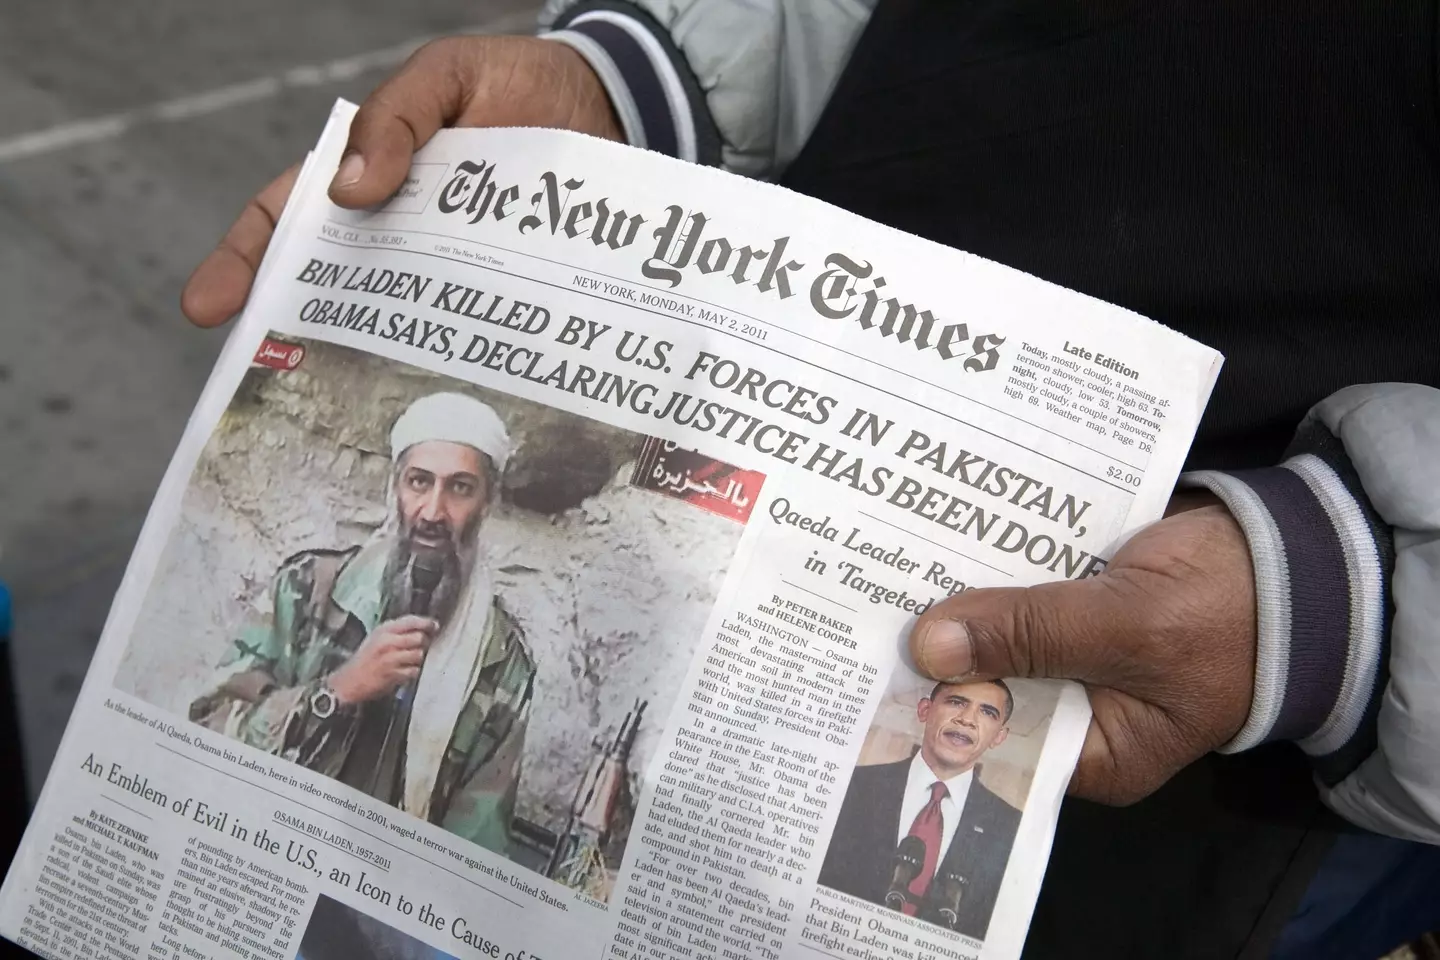 Osama Bin Laden was killed in 2011 by US Navy SEALS.